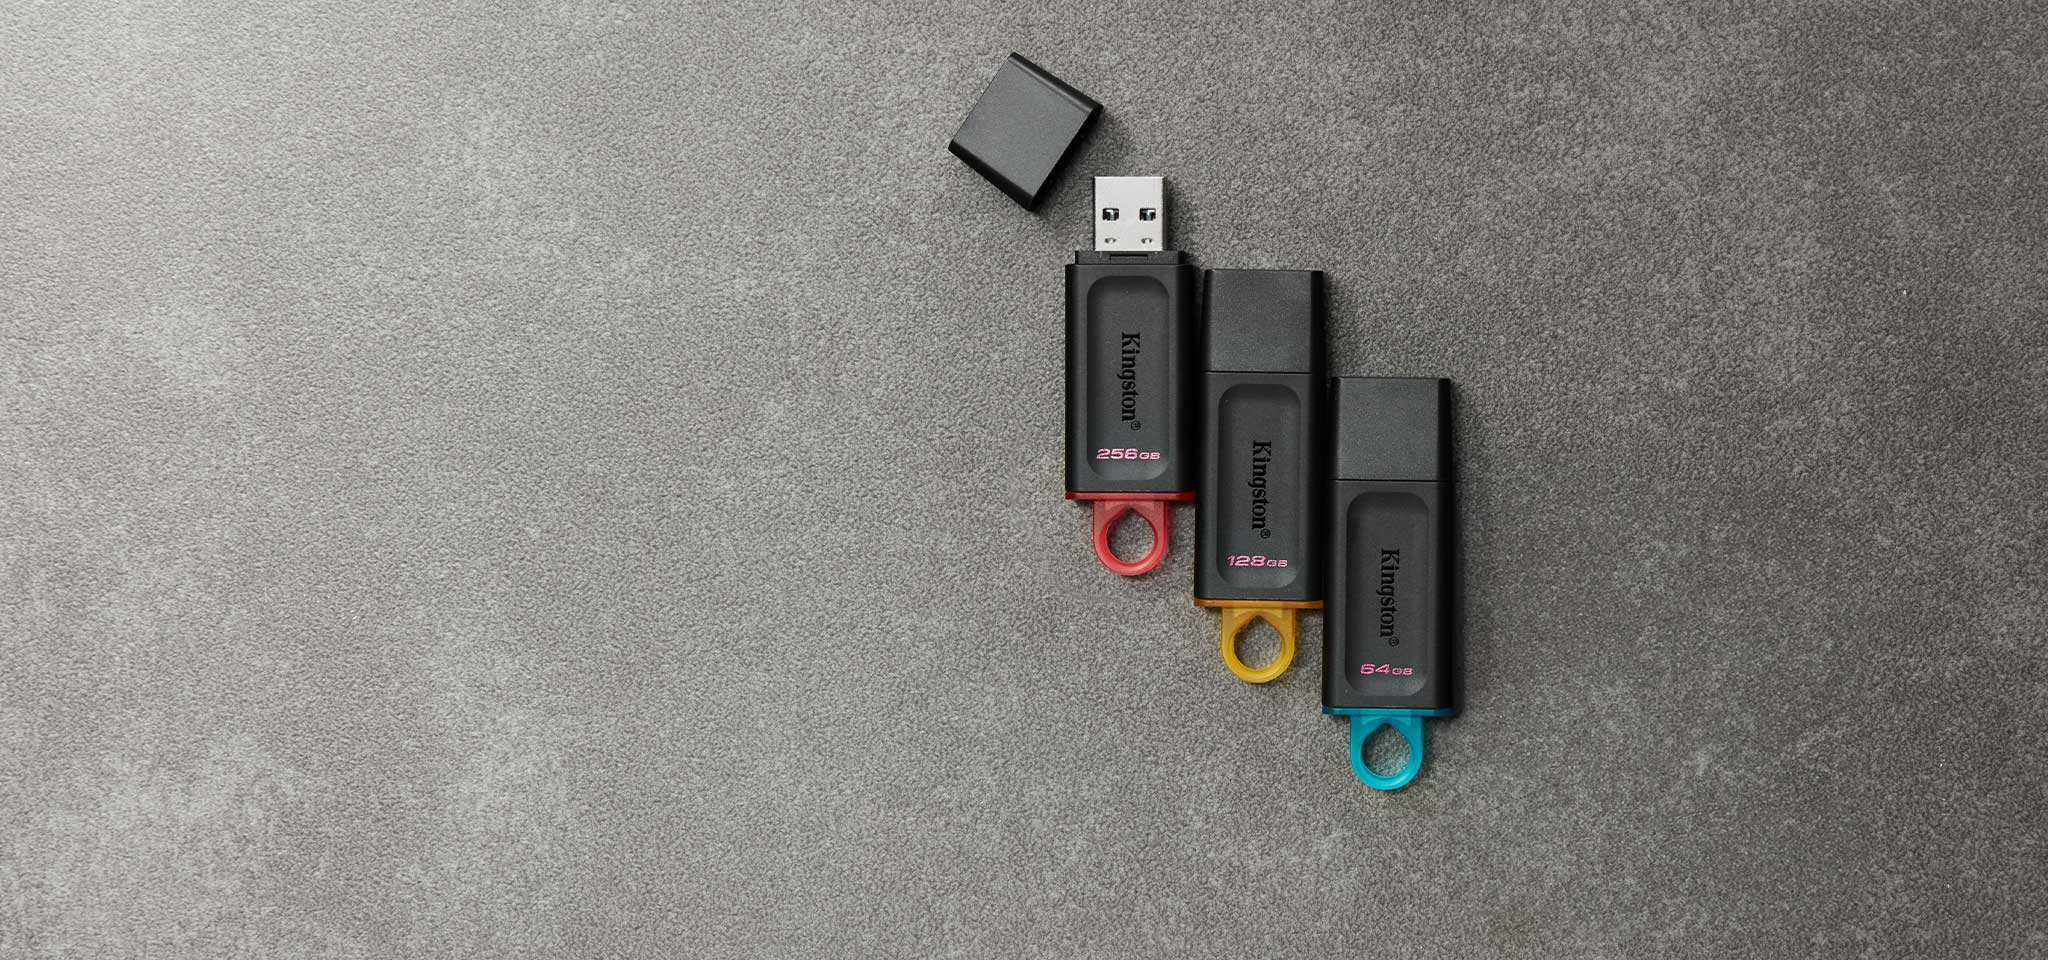 Vista superior de cuatro unidades flash USB DT Exodia diferentes en varios colores por capacidad en una alfombra gris